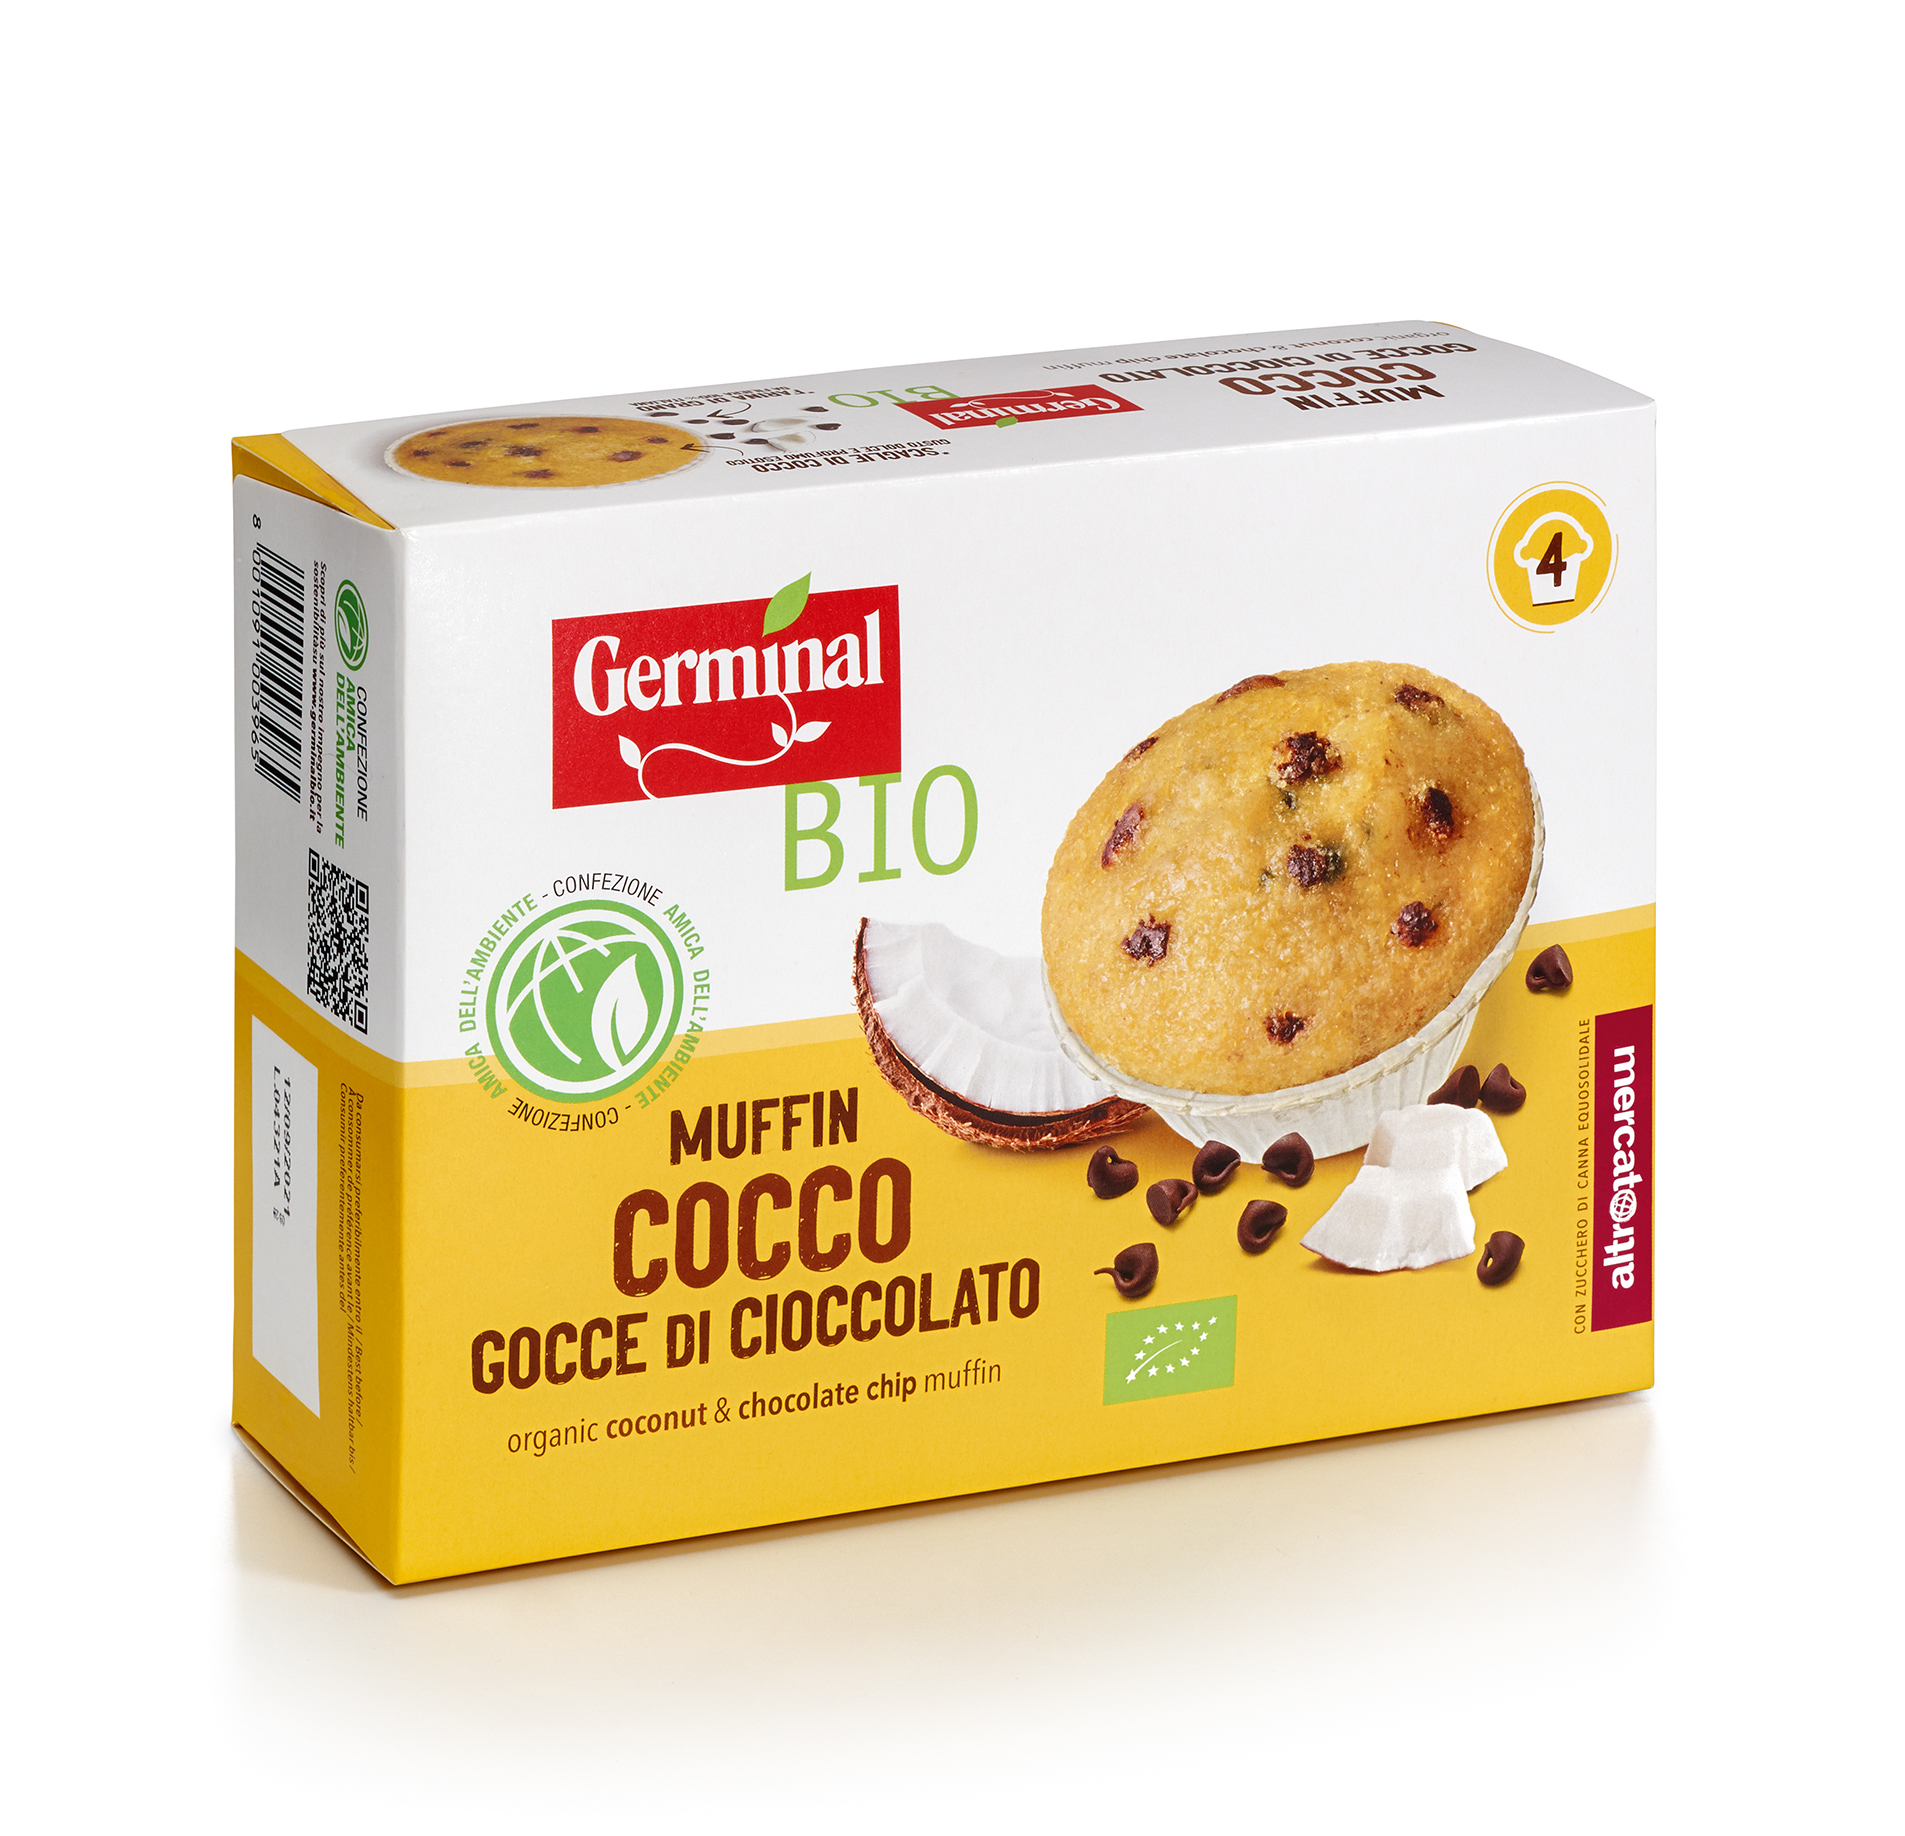 Immagine confezione Muffin Cocco Gocce di Cioccolato Germinal Bio